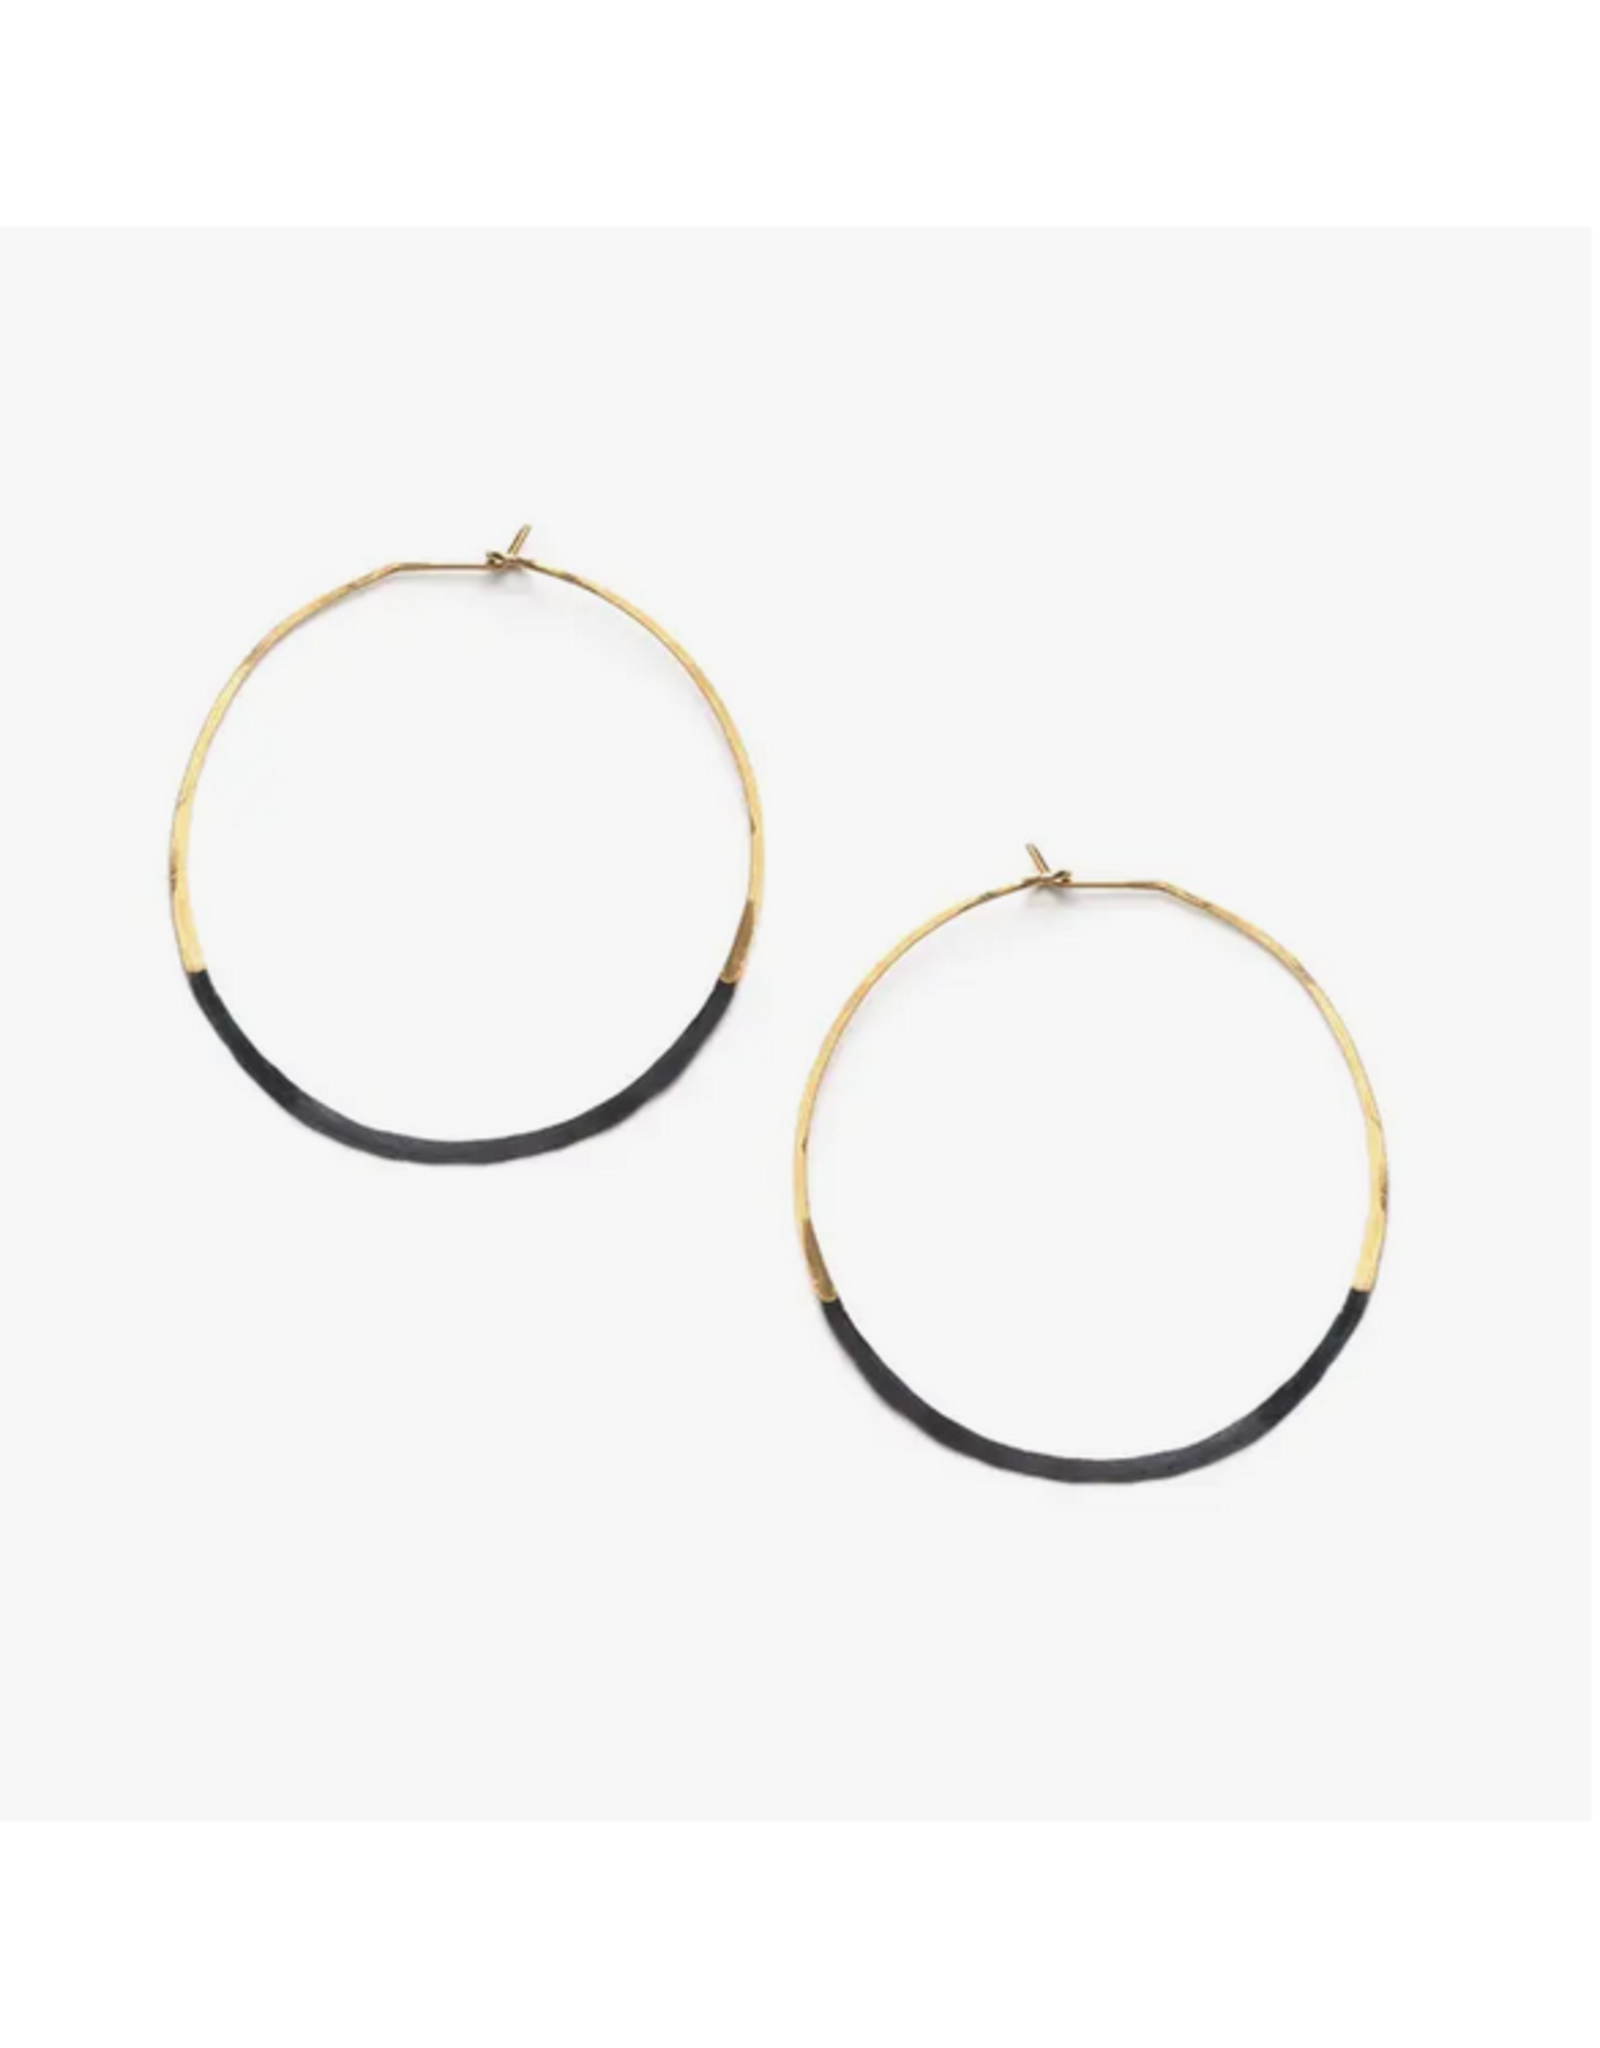 Patina Dipped Circle Hoop Earrings